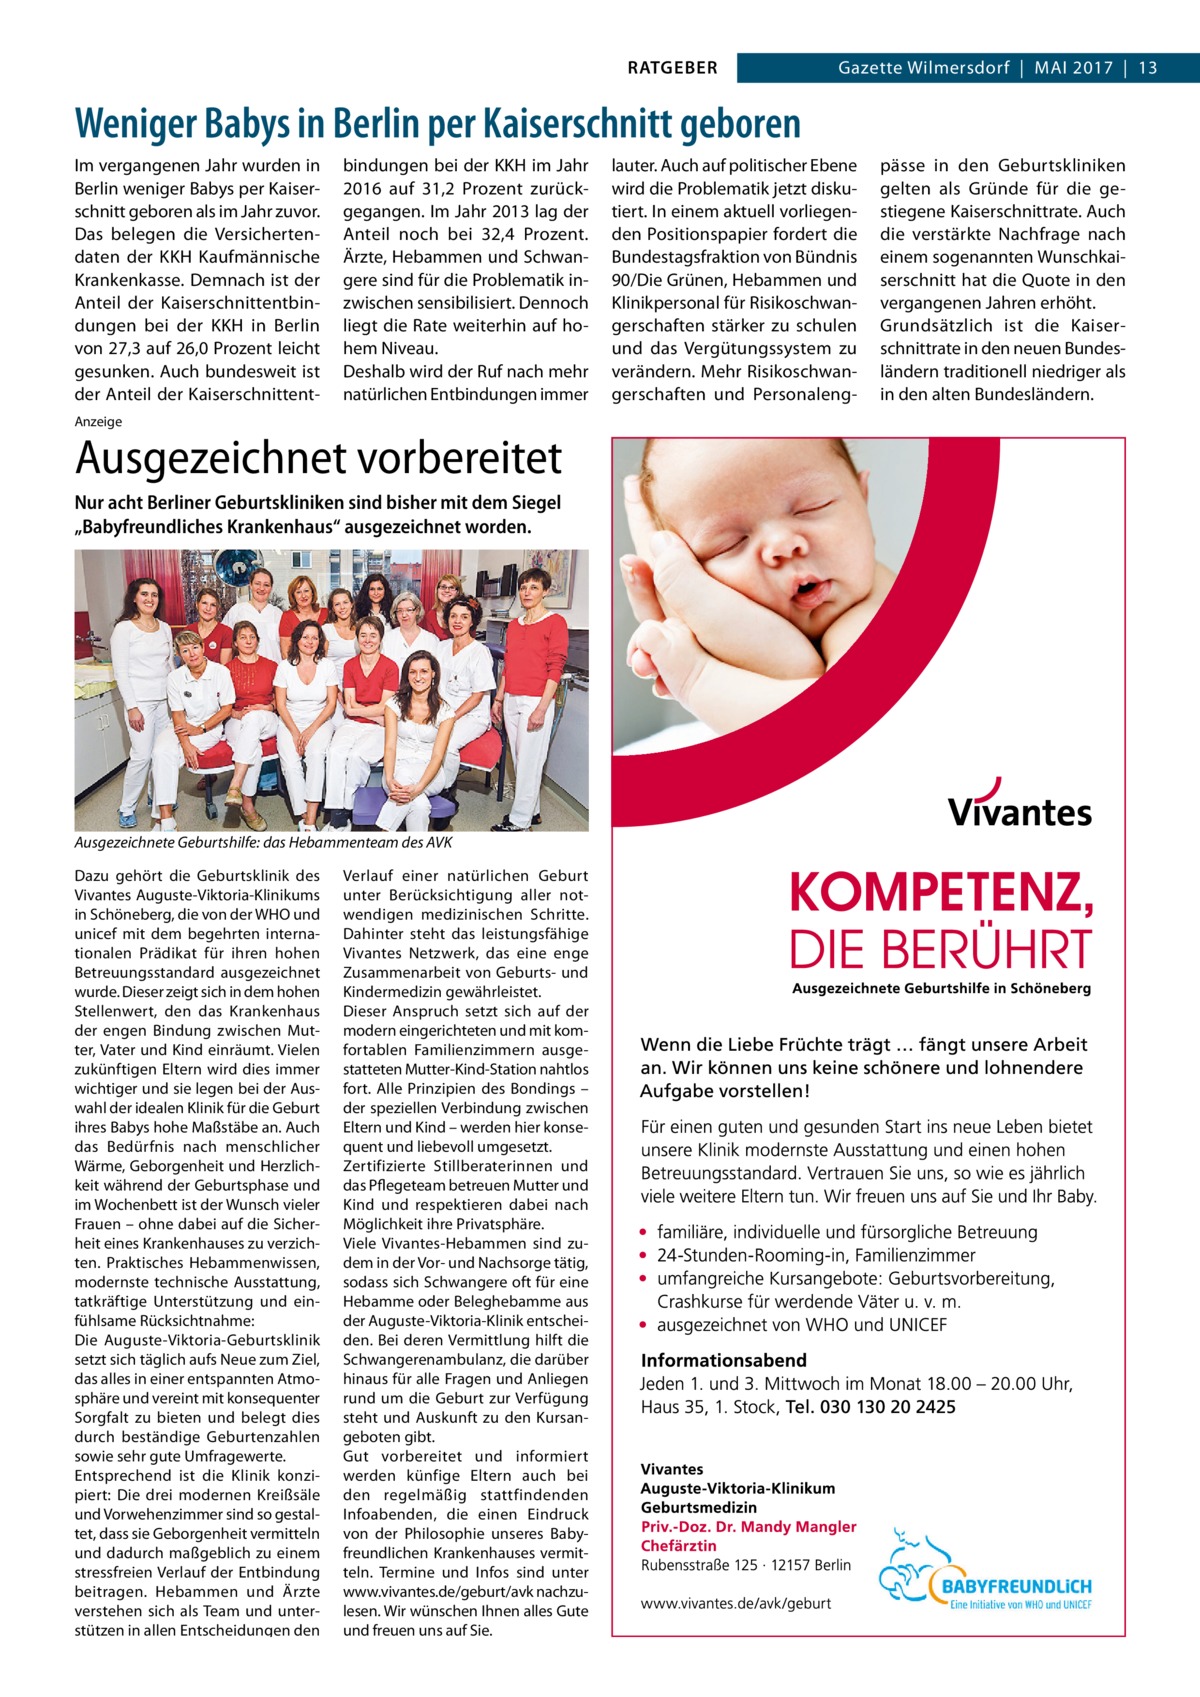 RATGEBER  Gazette Wilmersdorf  |  Mai 2017  |  13  Weniger Babys in Berlin per Kaiserschnitt geboren Im vergangenen Jahr wurden in Berlin weniger Babys per Kaiserschnitt geboren als im Jahr zuvor. Das belegen die Versichertendaten der KKH Kaufmännische Krankenkasse. Demnach ist der Anteil der Kaiserschnittentbindungen bei der KKH in Berlin von 27,3 auf 26,0 Prozent leicht gesunken. Auch bundesweit ist der Anteil der Kaiserschnittent bindungen bei der KKH im Jahr 2016 auf 31,2  Prozent zurückgegangen. Im Jahr 2013 lag der Anteil noch bei 32,4  Prozent. Ärzte, Hebammen und Schwangere sind für die Problematik inzwischen sensibilisiert. Dennoch liegt die Rate weiterhin auf hohem Niveau. Deshalb wird der Ruf nach mehr natürlichen Entbindungen immer  Anzeige  Ausgezeichnet vorbereitet Nur acht Berliner Geburtskliniken sind bisher mit dem Siegel „Babyfreundliches Krankenhaus“ ausgezeichnet worden.  Ausgezeichnete Geburtshilfe: das Hebammenteam des AVK Dazu gehört die Geburtsklinik des Vivantes Auguste-Viktoria-Klinikums in Schöneberg, die von der WHO und unicef mit dem begehrten internationalen Prädikat für ihren hohen Betreuungsstandard ausgezeichnet wurde. Dieser zeigt sich in dem hohen Stellenwert, den das Krankenhaus der engen Bindung zwischen Mutter, Vater und Kind einräumt. Vielen zukünftigen Eltern wird dies immer wichtiger und sie legen bei der Auswahl der idealen Klinik für die Geburt ihres Babys hohe Maßstäbe an. Auch das Bedürfnis nach menschlicher Wärme, Geborgenheit und Herzlichkeit während der Geburtsphase und im Wochenbett ist der Wunsch vieler Frauen – ohne dabei auf die Sicherheit eines Krankenhauses zu verzichten. Praktisches Hebammenwissen, modernste technische Ausstattung, tatkräftige Unterstützung und einfühlsame Rücksichtnahme: Die Auguste-Viktoria-Geburtsklinik setzt sich täglich aufs Neue zum Ziel, das alles in einer entspannten Atmosphäre und vereint mit konsequenter Sorgfalt zu bieten und belegt dies durch beständige Geburtenzahlen sowie sehr gute Umfragewerte. Entsprechend ist die Klinik konzipiert: Die drei modernen Kreißsäle und Vorwehenzimmer sind so gestaltet, dass sie Geborgenheit vermitteln und dadurch maßgeblich zu einem stressfreien Verlauf der Entbindung beitragen. Hebammen und Ärzte verstehen sich als Team und unterstützen in allen Entscheidungen den  Verlauf einer natürlichen Geburt unter Berücksichtigung aller notwendigen medizinischen Schritte. Dahinter steht das leistungsfähige Vivantes Netzwerk, das eine enge Zusammenarbeit von Geburts- und Kindermedizin gewährleistet. Dieser Anspruch setzt sich auf der modern eingerichteten und mit komfortablen Familienzimmern ausgestatteten Mutter-Kind-Station nahtlos fort. Alle Prinzipien des Bondings – der speziellen Verbindung zwischen Eltern und Kind – werden hier konsequent und liebevoll umgesetzt. Zertifizierte Stillberaterinnen und das Pflegeteam betreuen Mutter und Kind und respektieren dabei nach Möglichkeit ihre Privatsphäre. Viele Vivantes-Hebammen sind zudem in der Vor- und Nachsorge tätig, sodass sich Schwangere oft für eine Hebamme oder Beleghebamme aus der Auguste-Viktoria-Klinik entscheiden. Bei deren Vermittlung hilft die Schwangerenambulanz, die darüber hinaus für alle Fragen und Anliegen rund um die Geburt zur Verfügung steht und Auskunft zu den Kursangeboten gibt. Gut vorbereitet und informiert werden künfige Eltern auch bei den regelmäßig stattfindenden Infoabenden, die einen Eindruck von der Philosophie unseres Babyfreundlichen Krankenhauses vermitteln. Termine und Infos sind unter www.vivantes.de/geburt/avk nachzulesen. Wir wünschen Ihnen alles Gute und freuen uns auf Sie.  lauter. Auch auf politischer Ebene wird die Problematik jetzt diskutiert. In einem aktuell vorliegenden Positionspapier fordert die Bundestagsfraktion von Bündnis 90/Die Grünen, Hebammen und Klinikpersonal für Risikoschwangerschaften stärker zu schulen und das Vergütungssystem zu verändern. Mehr Risikoschwangerschaften und Personaleng pässe in den Geburtskliniken gelten als Gründe für die gestiegene Kaiserschnittrate. Auch die verstärkte Nachfrage nach einem sogenannten Wunschkaiserschnitt hat die Quote in den vergangenen Jahren erhöht. Grundsätzlich ist die Kaiserschnittrate in den neuen Bundesländern traditionell niedriger als in den alten Bundesländern.